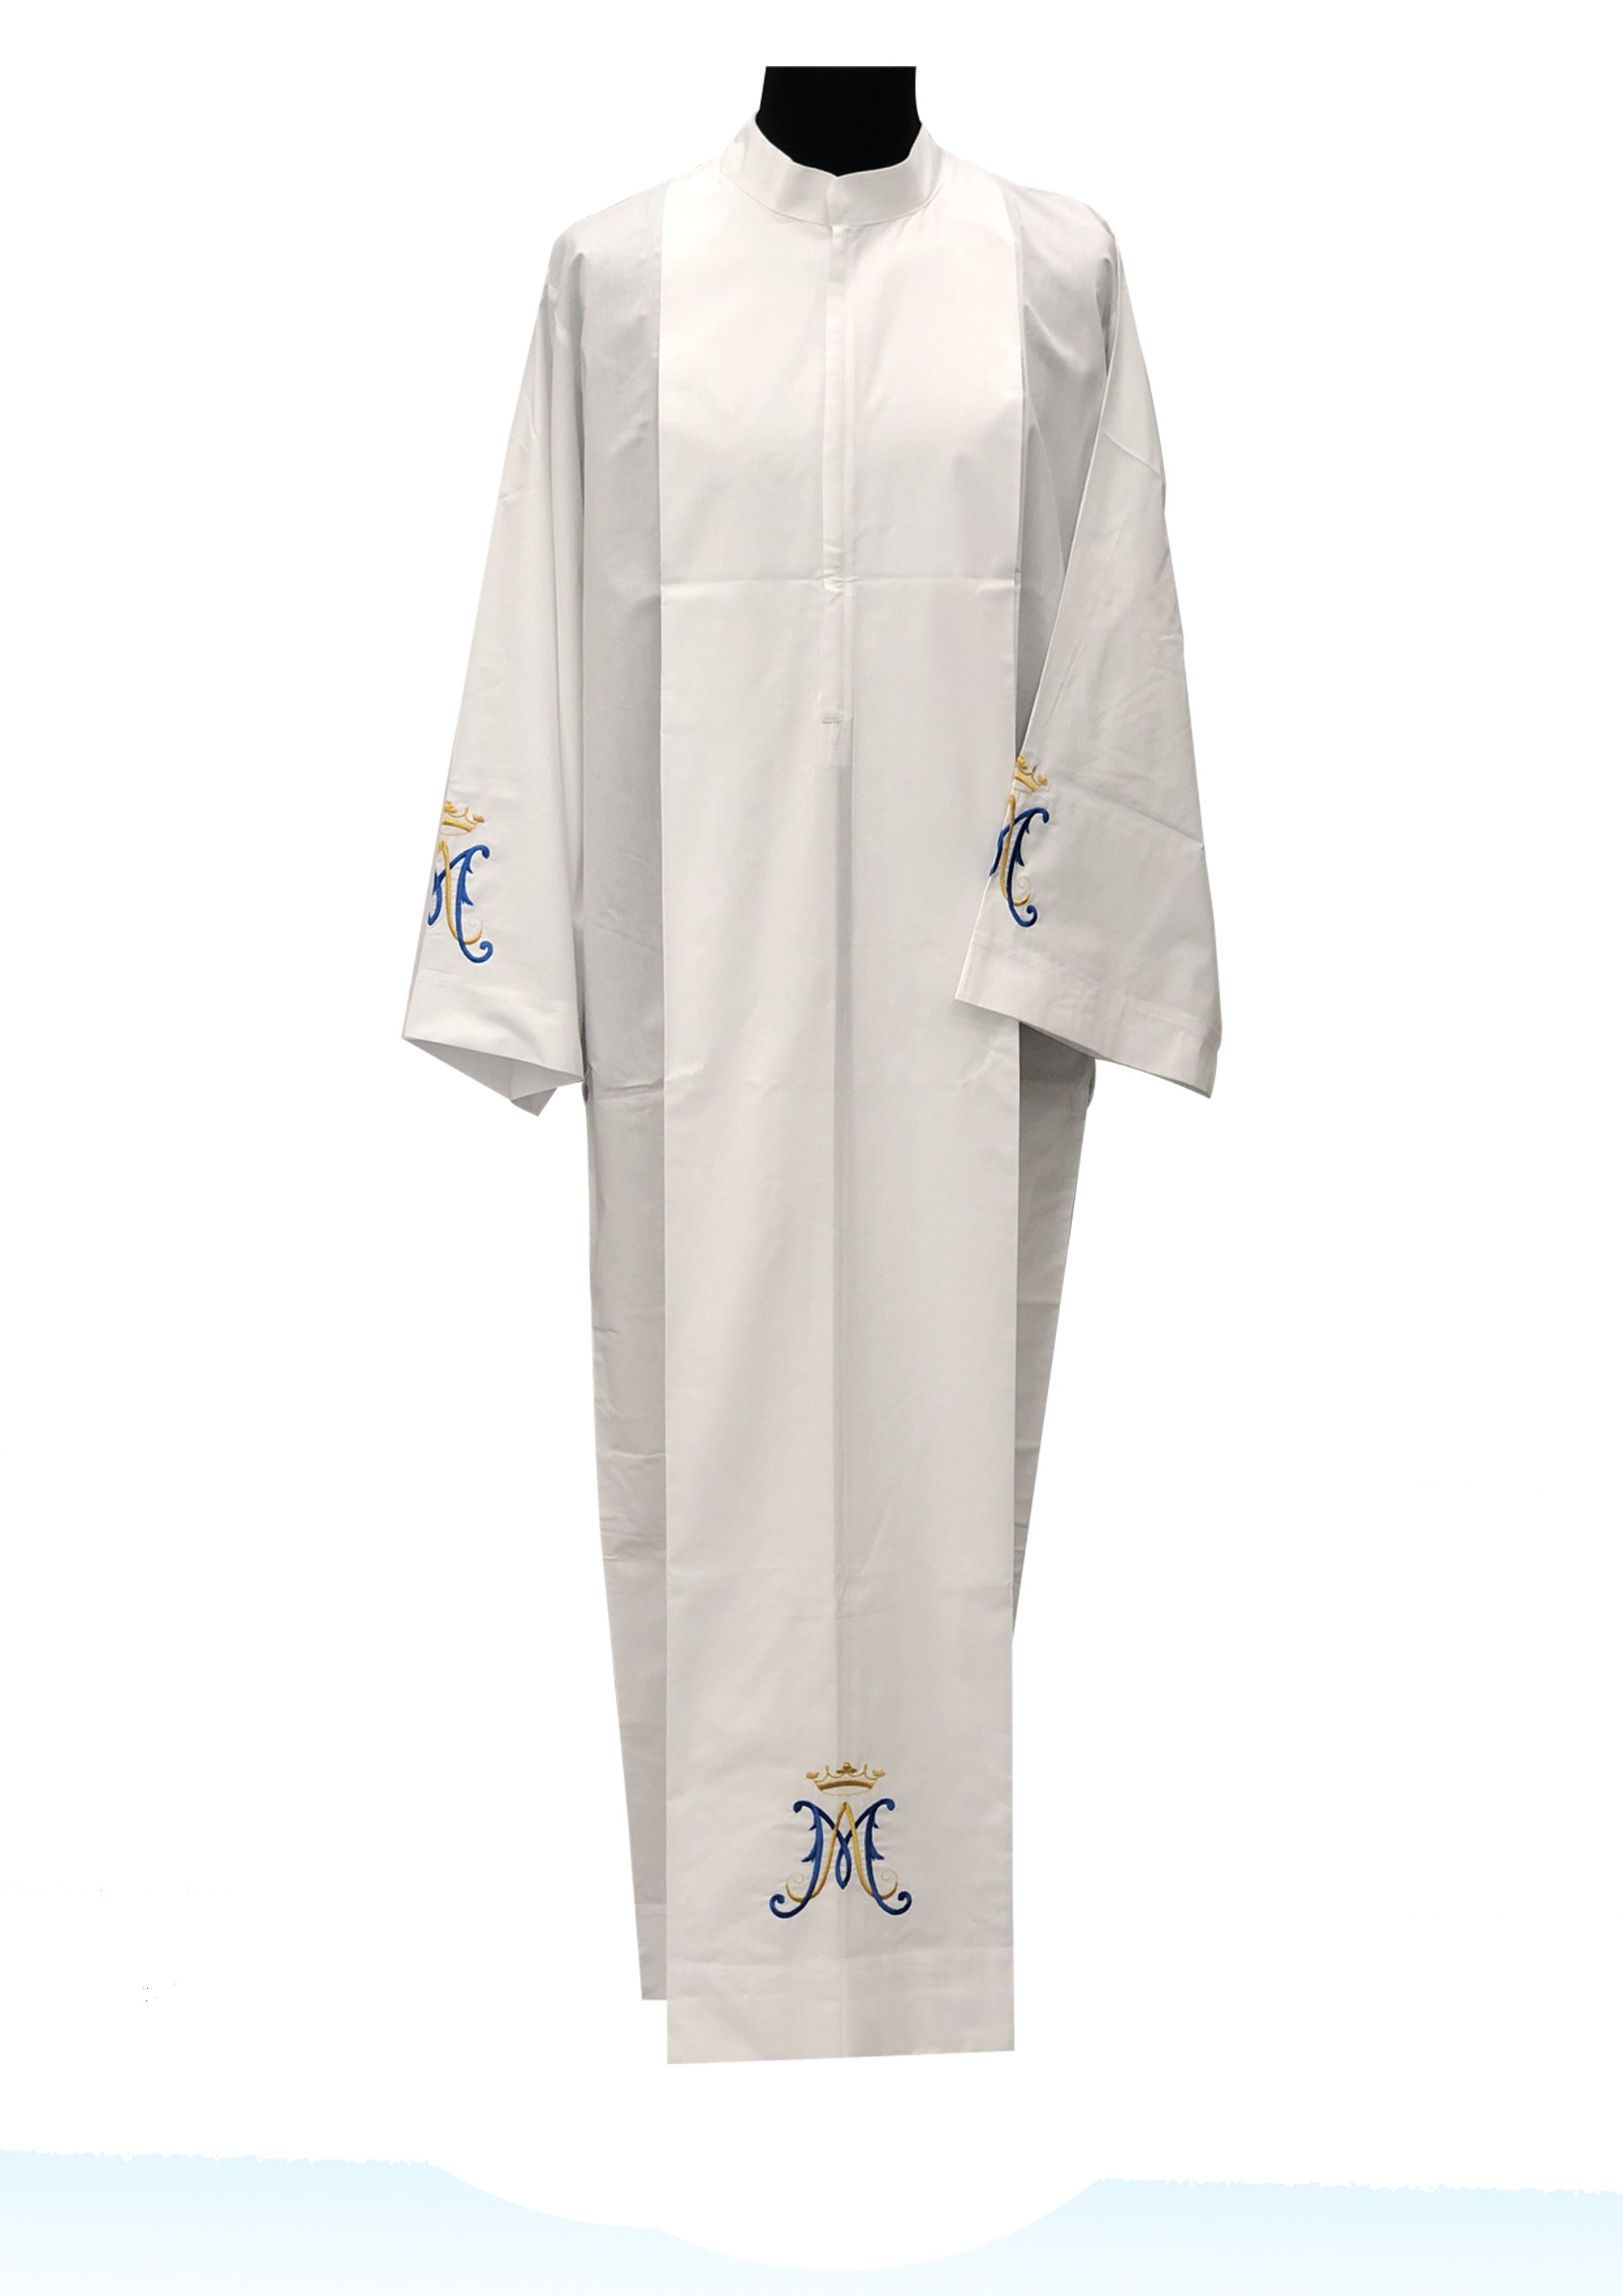 Camice da prete mariano con monogramma Collo Coreano